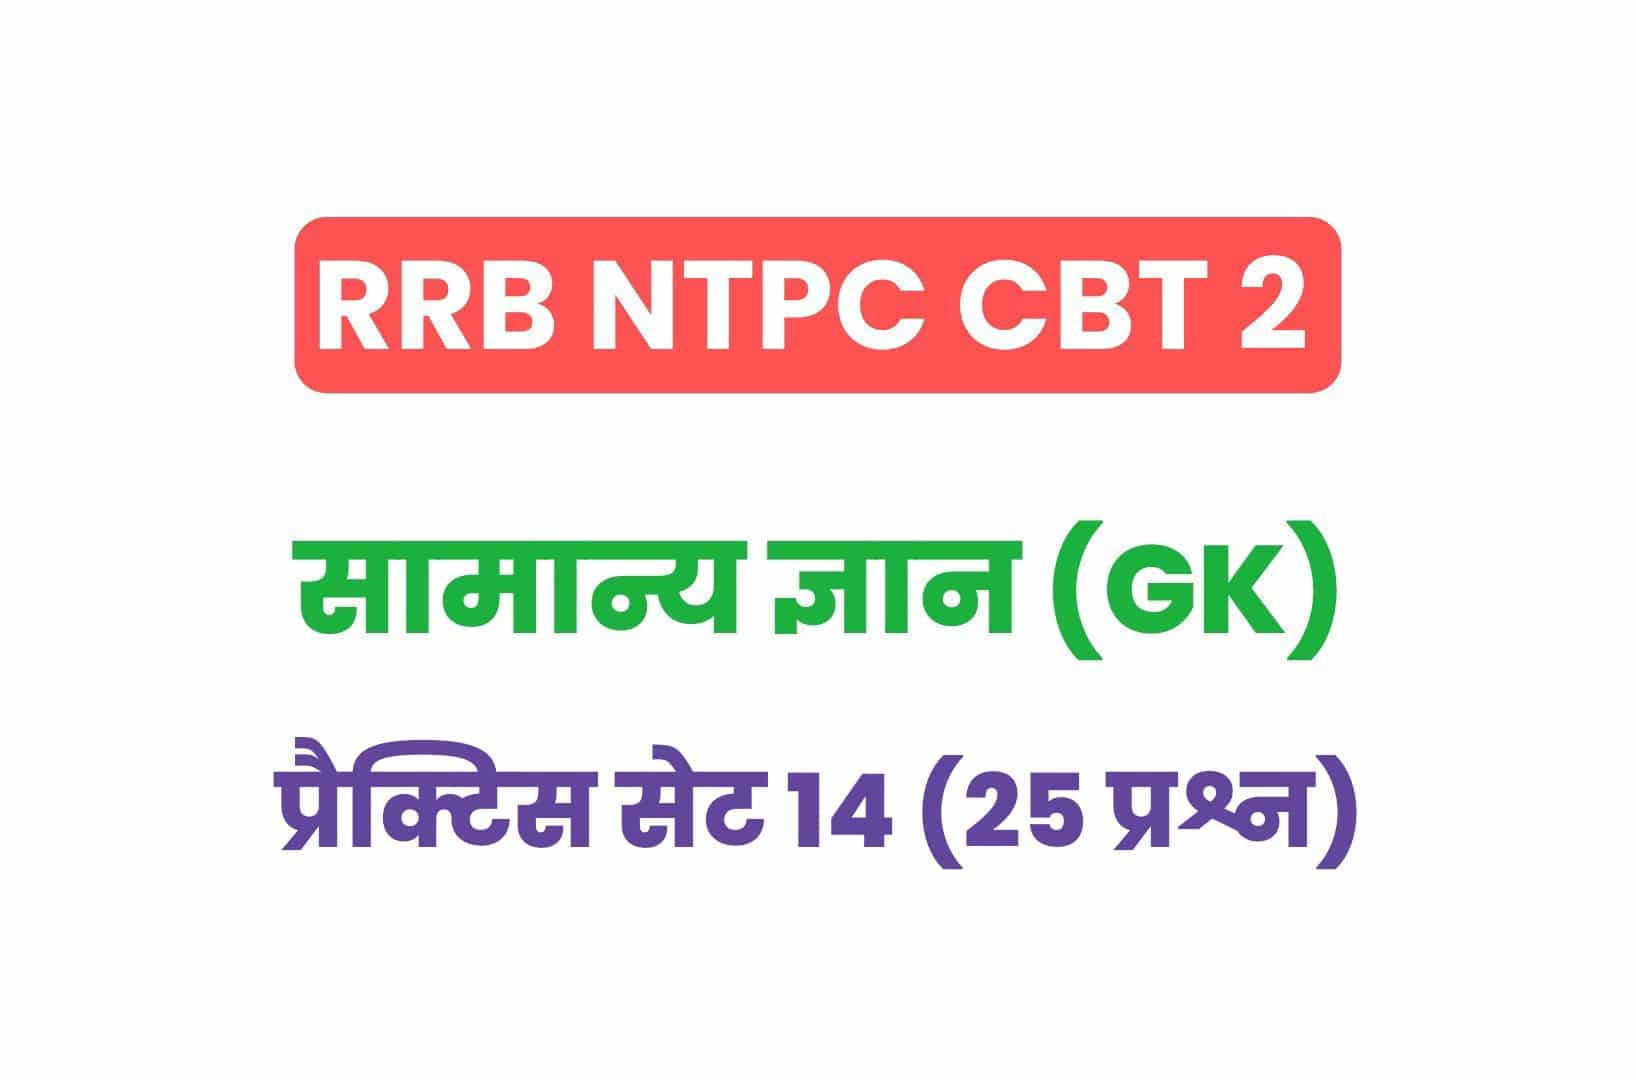 RRB NTPC CBT 2 GK प्रैक्टिस सेट 14: सामान्य ज्ञान के इन महत्वपूर्ण प्रश्नों का जरूर करें अध्ययन